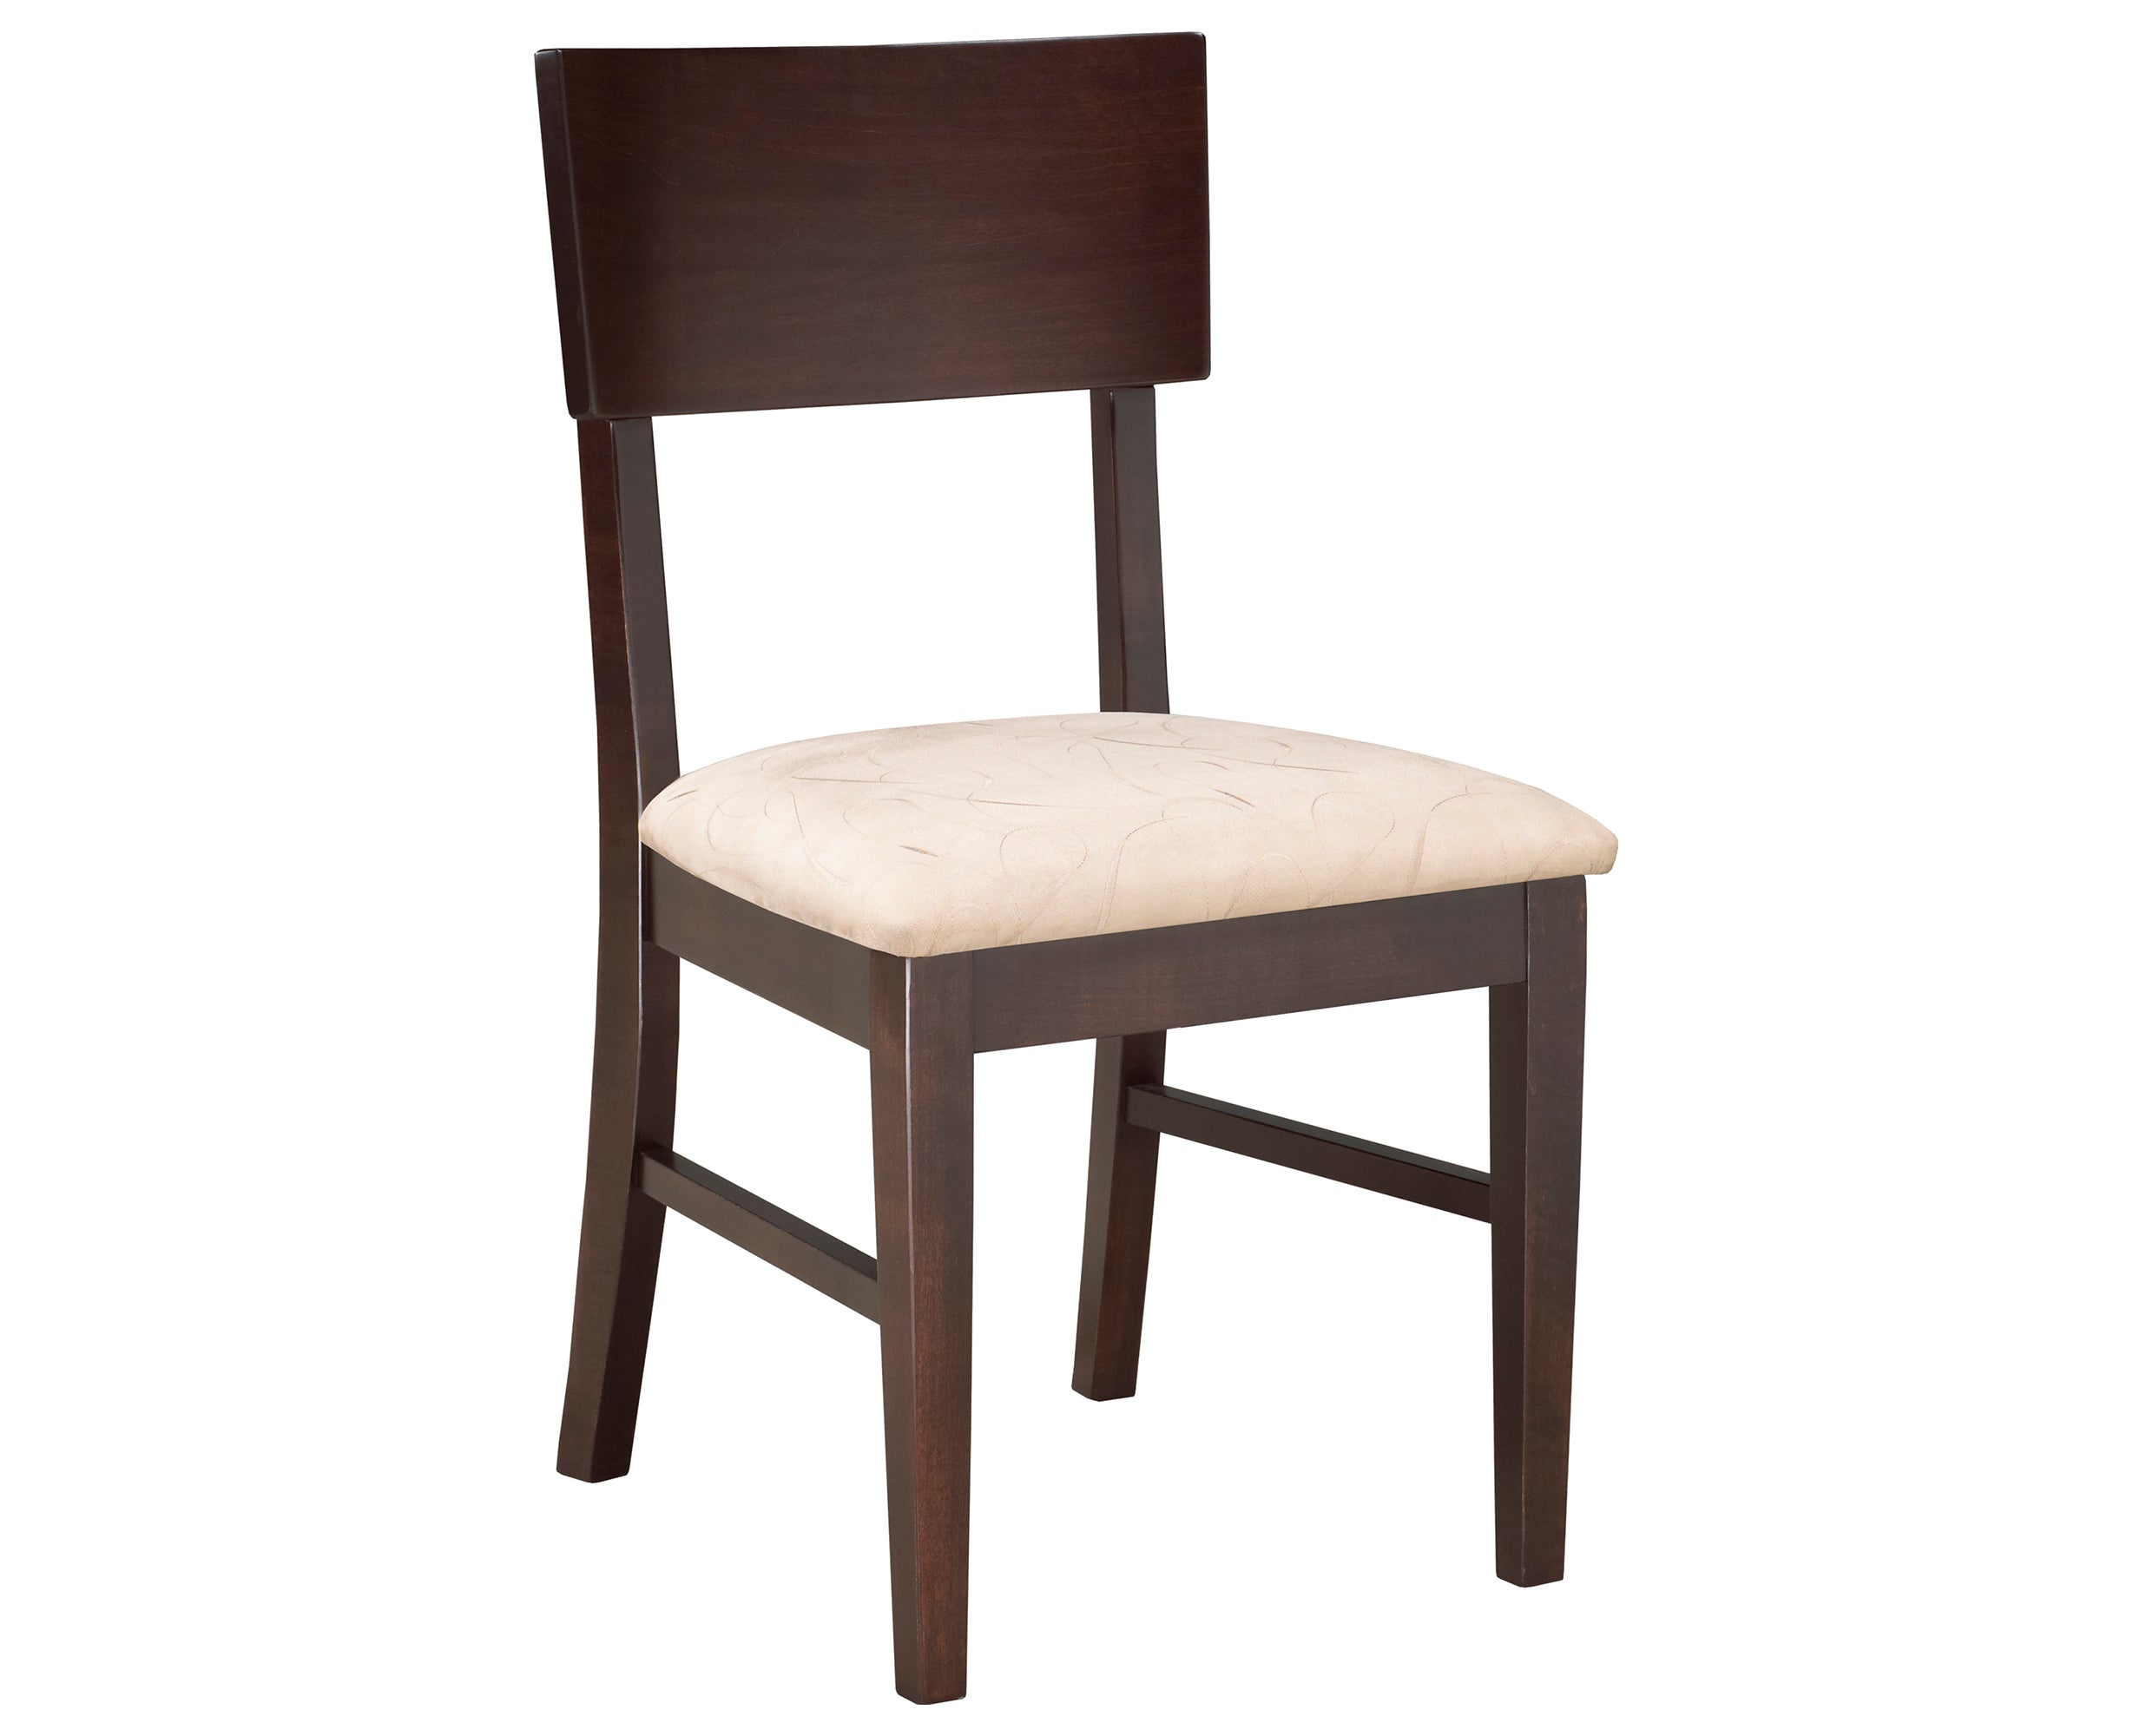 Chair as Shown | Cardinal Woodcraft Werkbund Dining Chair | Valley Ridge Furniture